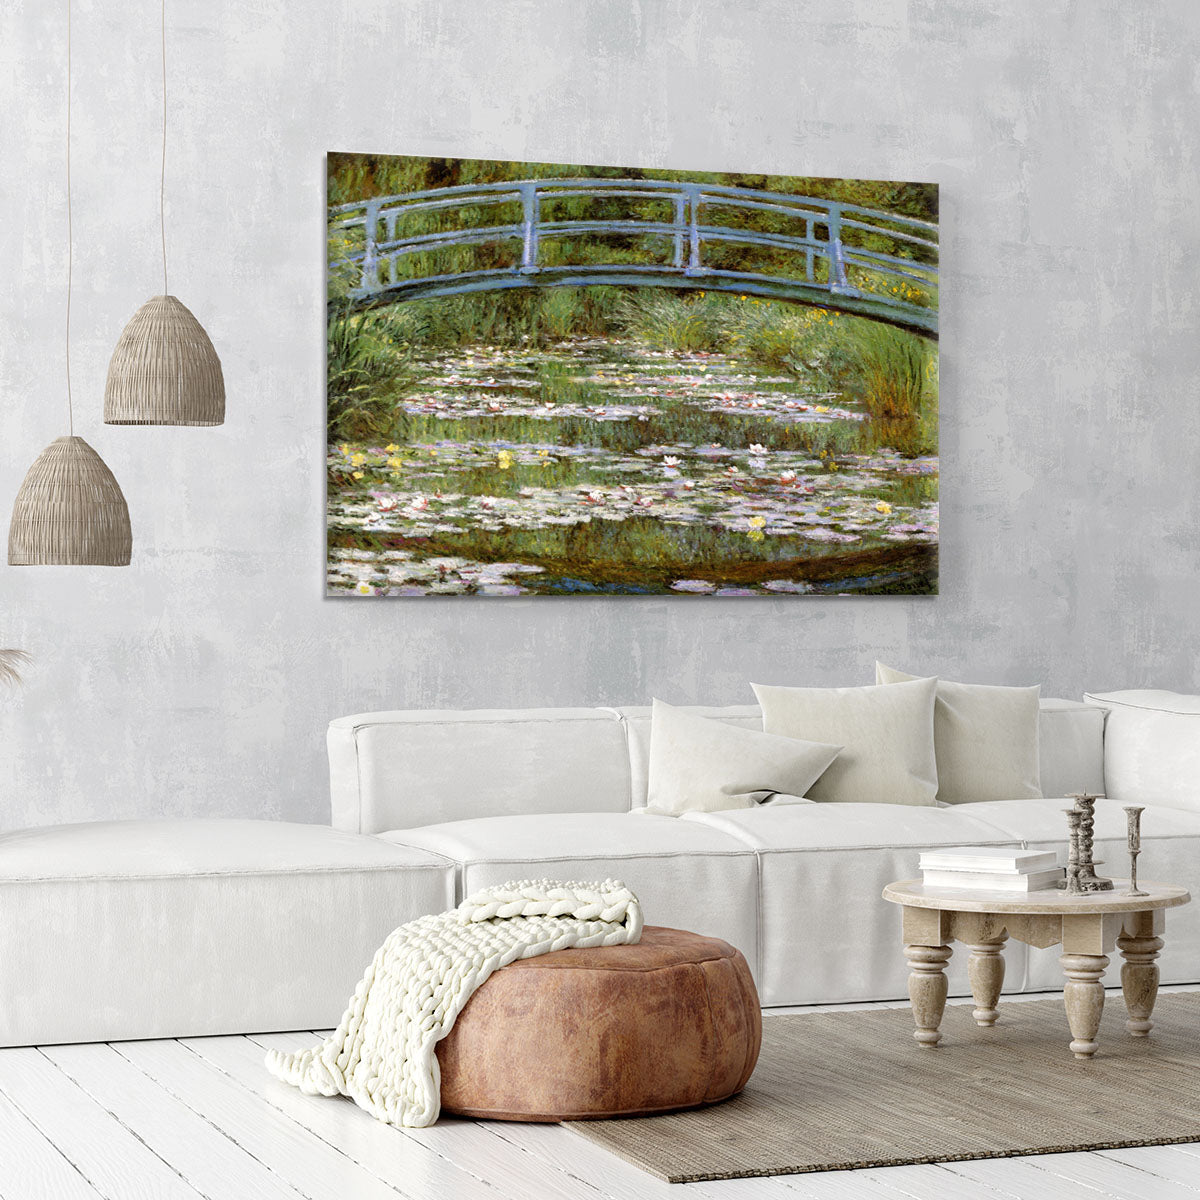 Le Pont Japonais by Monet Canvas Print or Poster - Canvas Art Rocks - 6